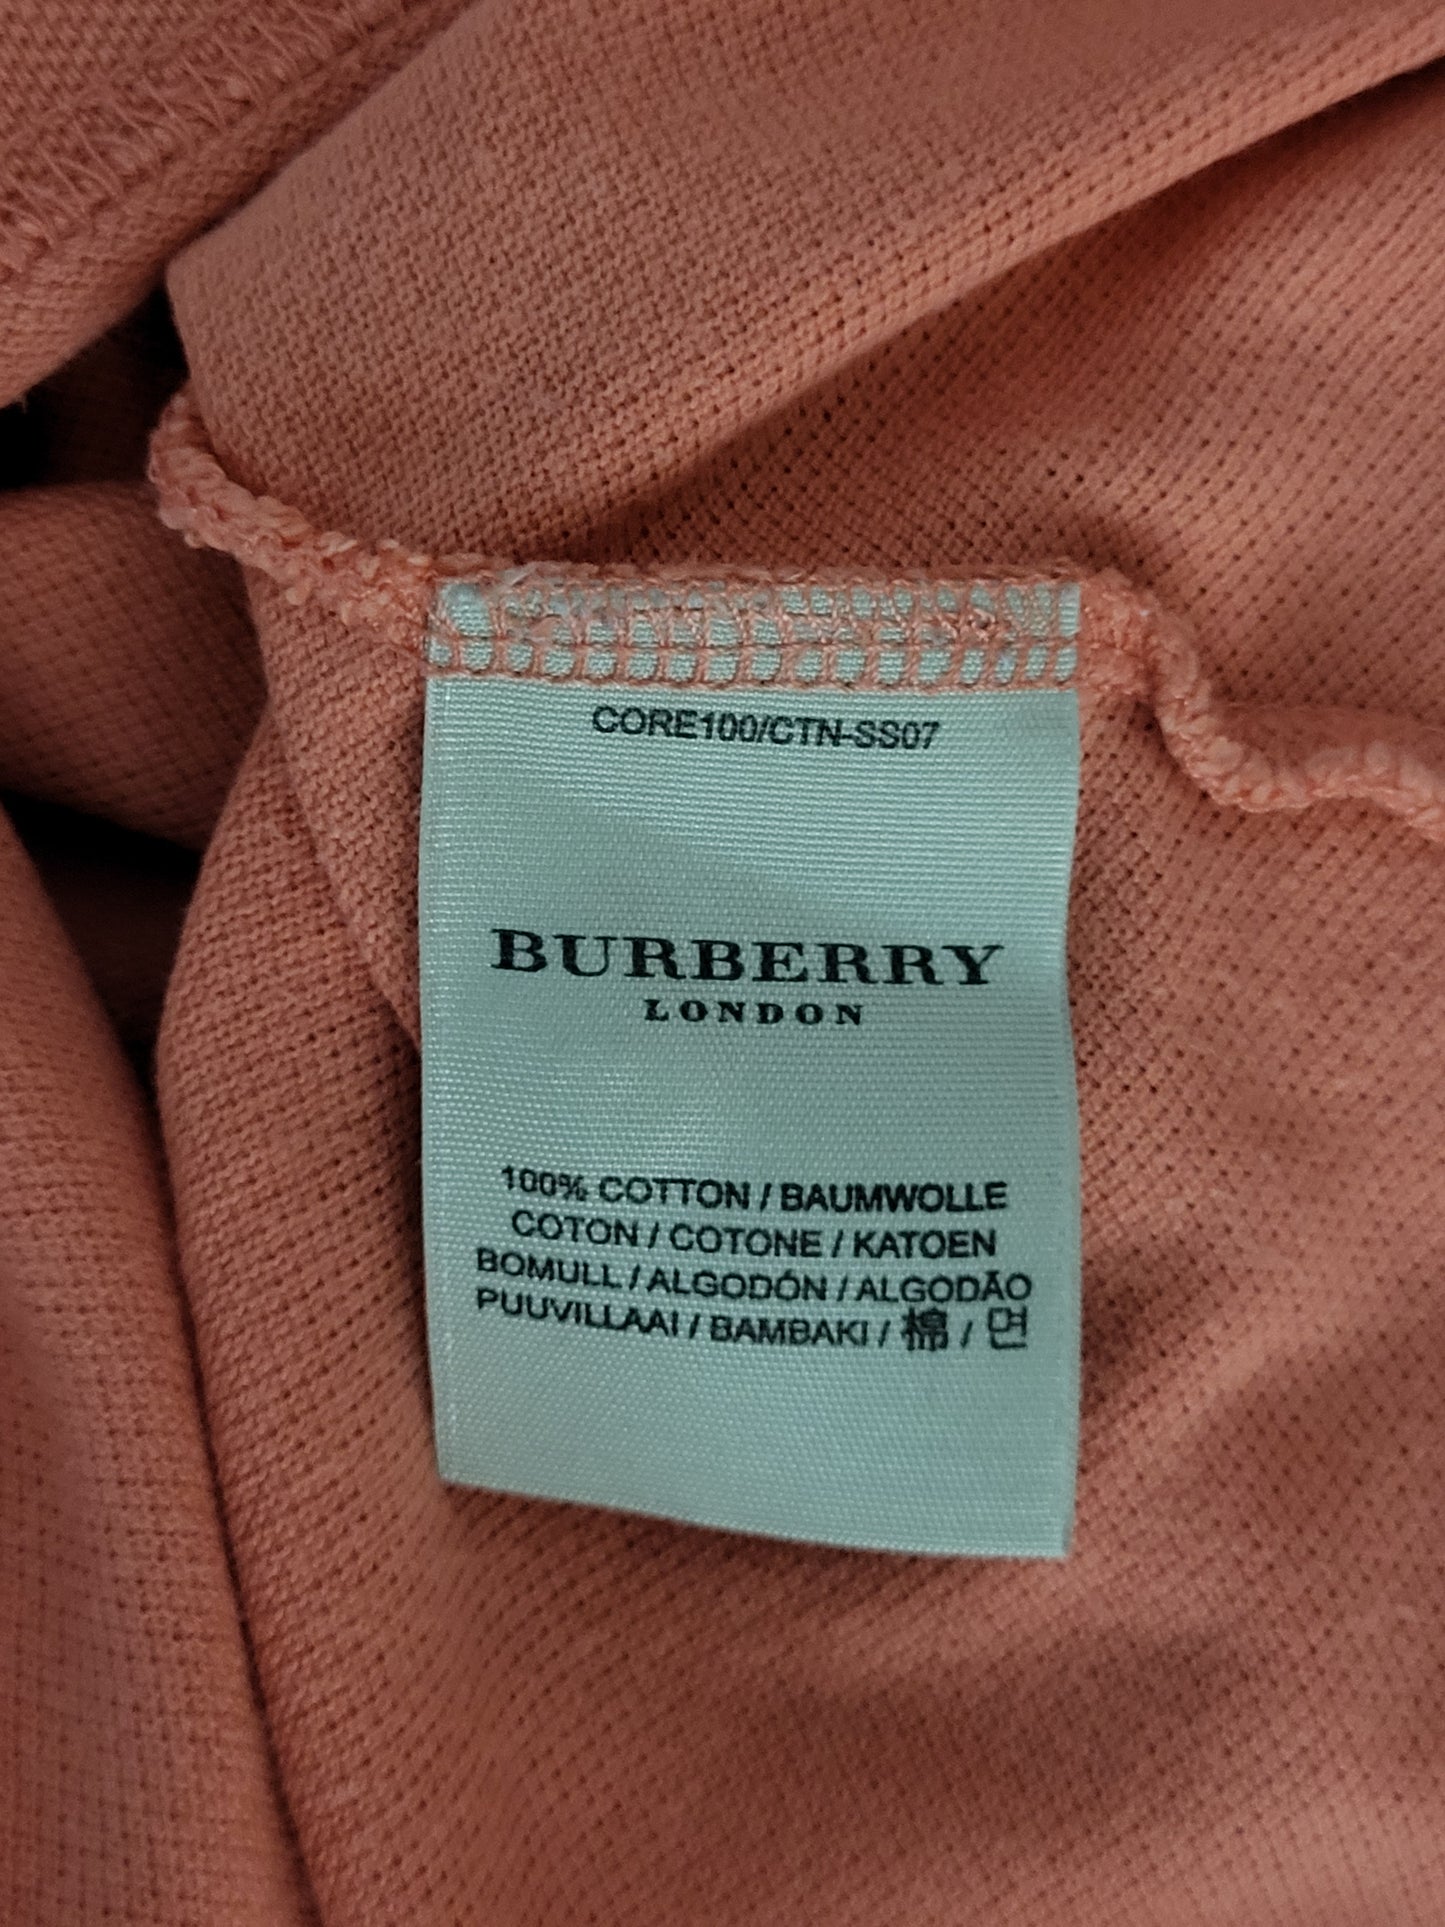 BURBERRY - Poloshirt - Klassisch - Apricot - Herren - L/XL